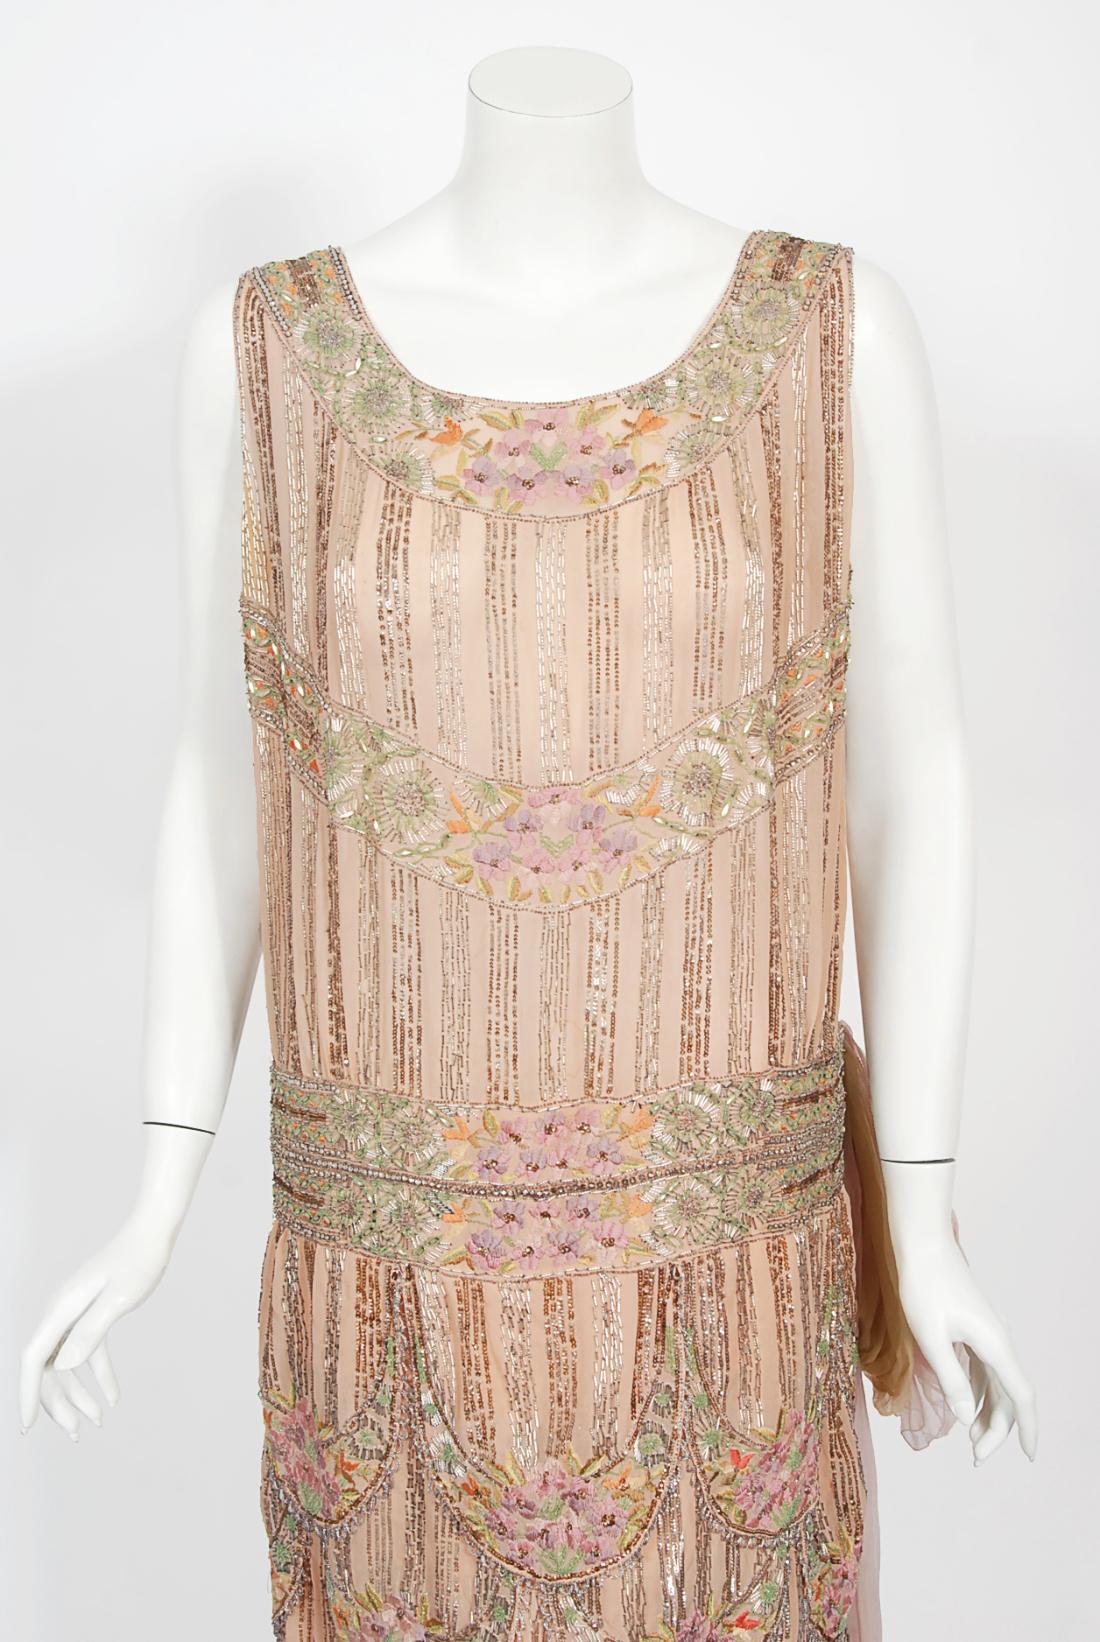 Es gibt viele schöne antike Kleidungsstücke, die noch existieren, aber hin und wieder stoße ich auf eines, das mich zum Staunen bringt. Dies ist eine außerordentlich schöne und außergewöhnliche 1920's Französisch Couture Museum Qualität erröten rosa